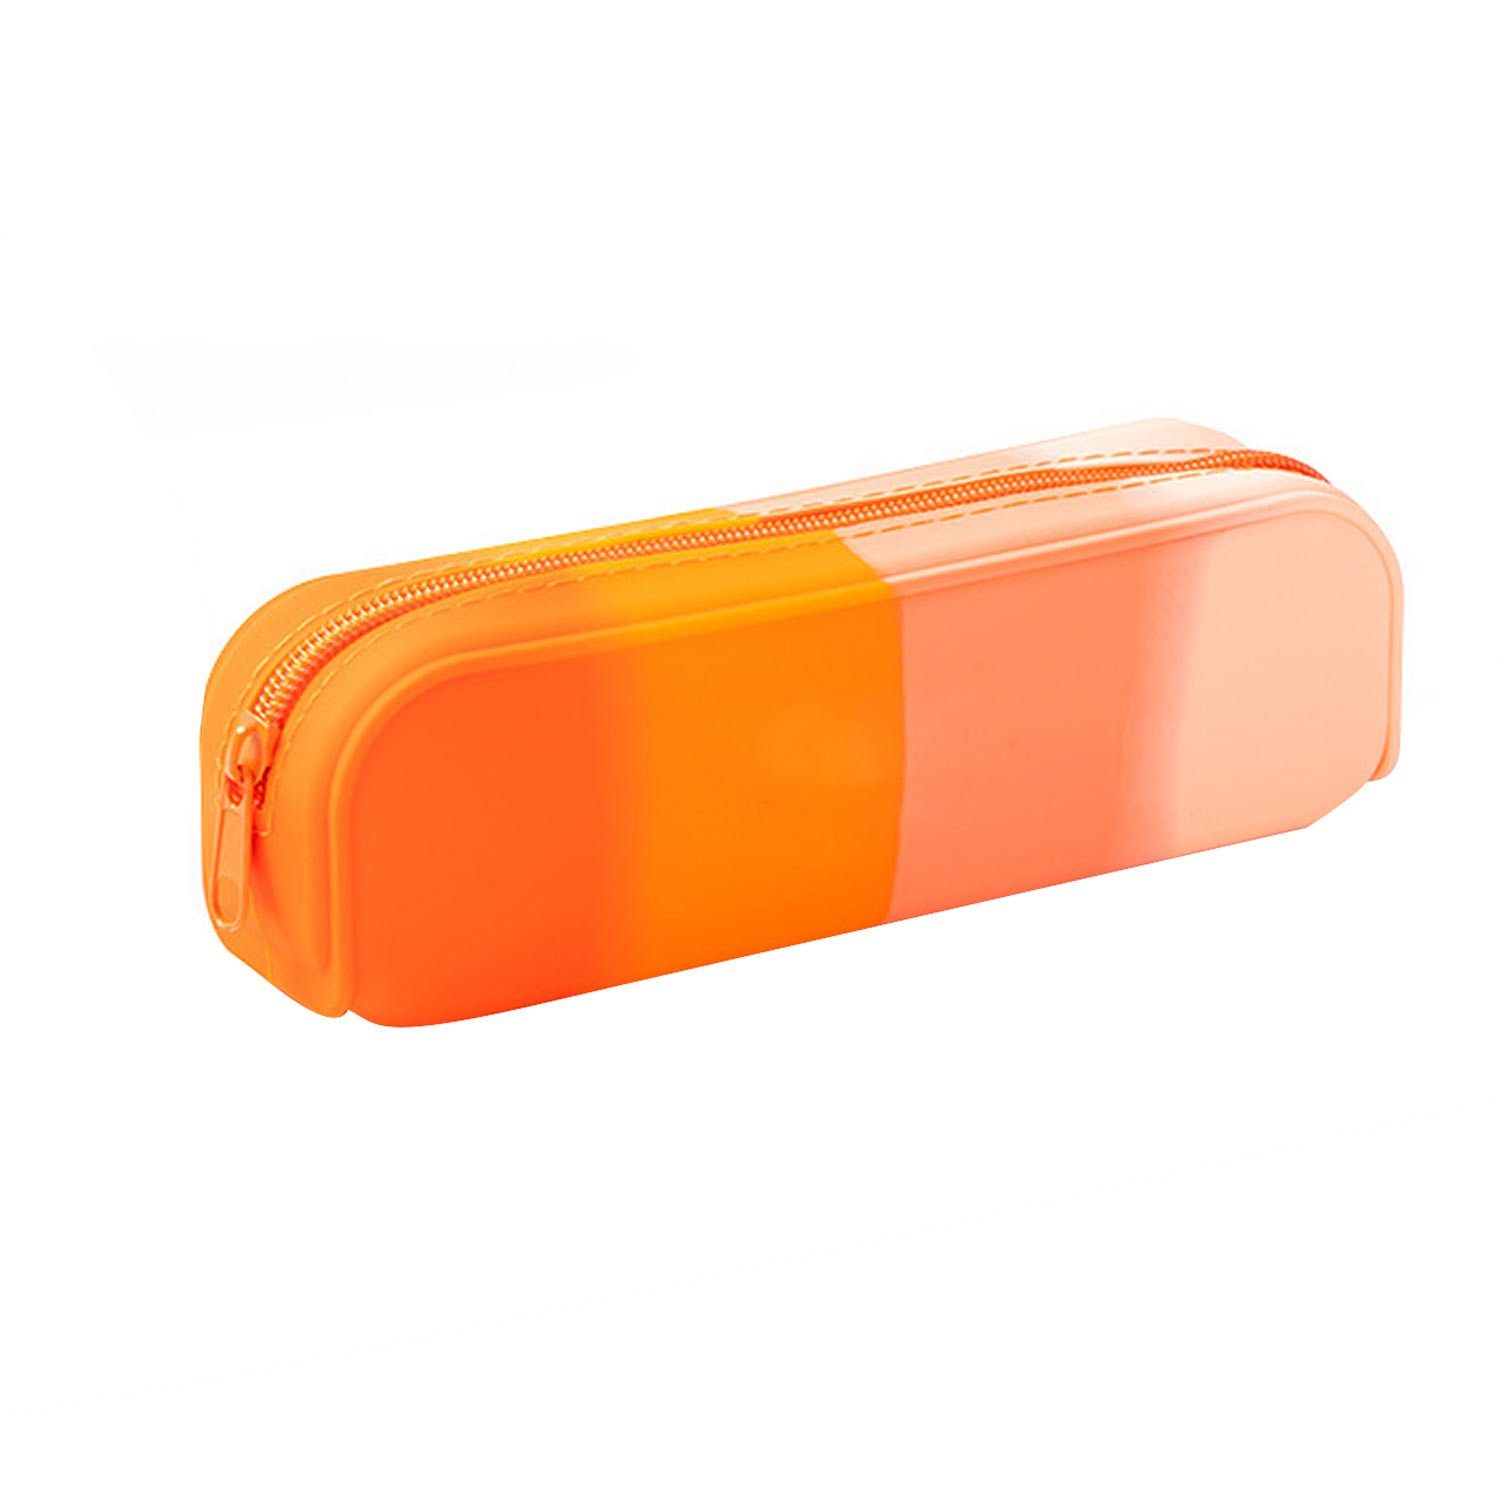 MAGICSHE Federmäppchen Hochwertige Silikontextur, Stifttasche mit praktischem Reißverschluss Orange